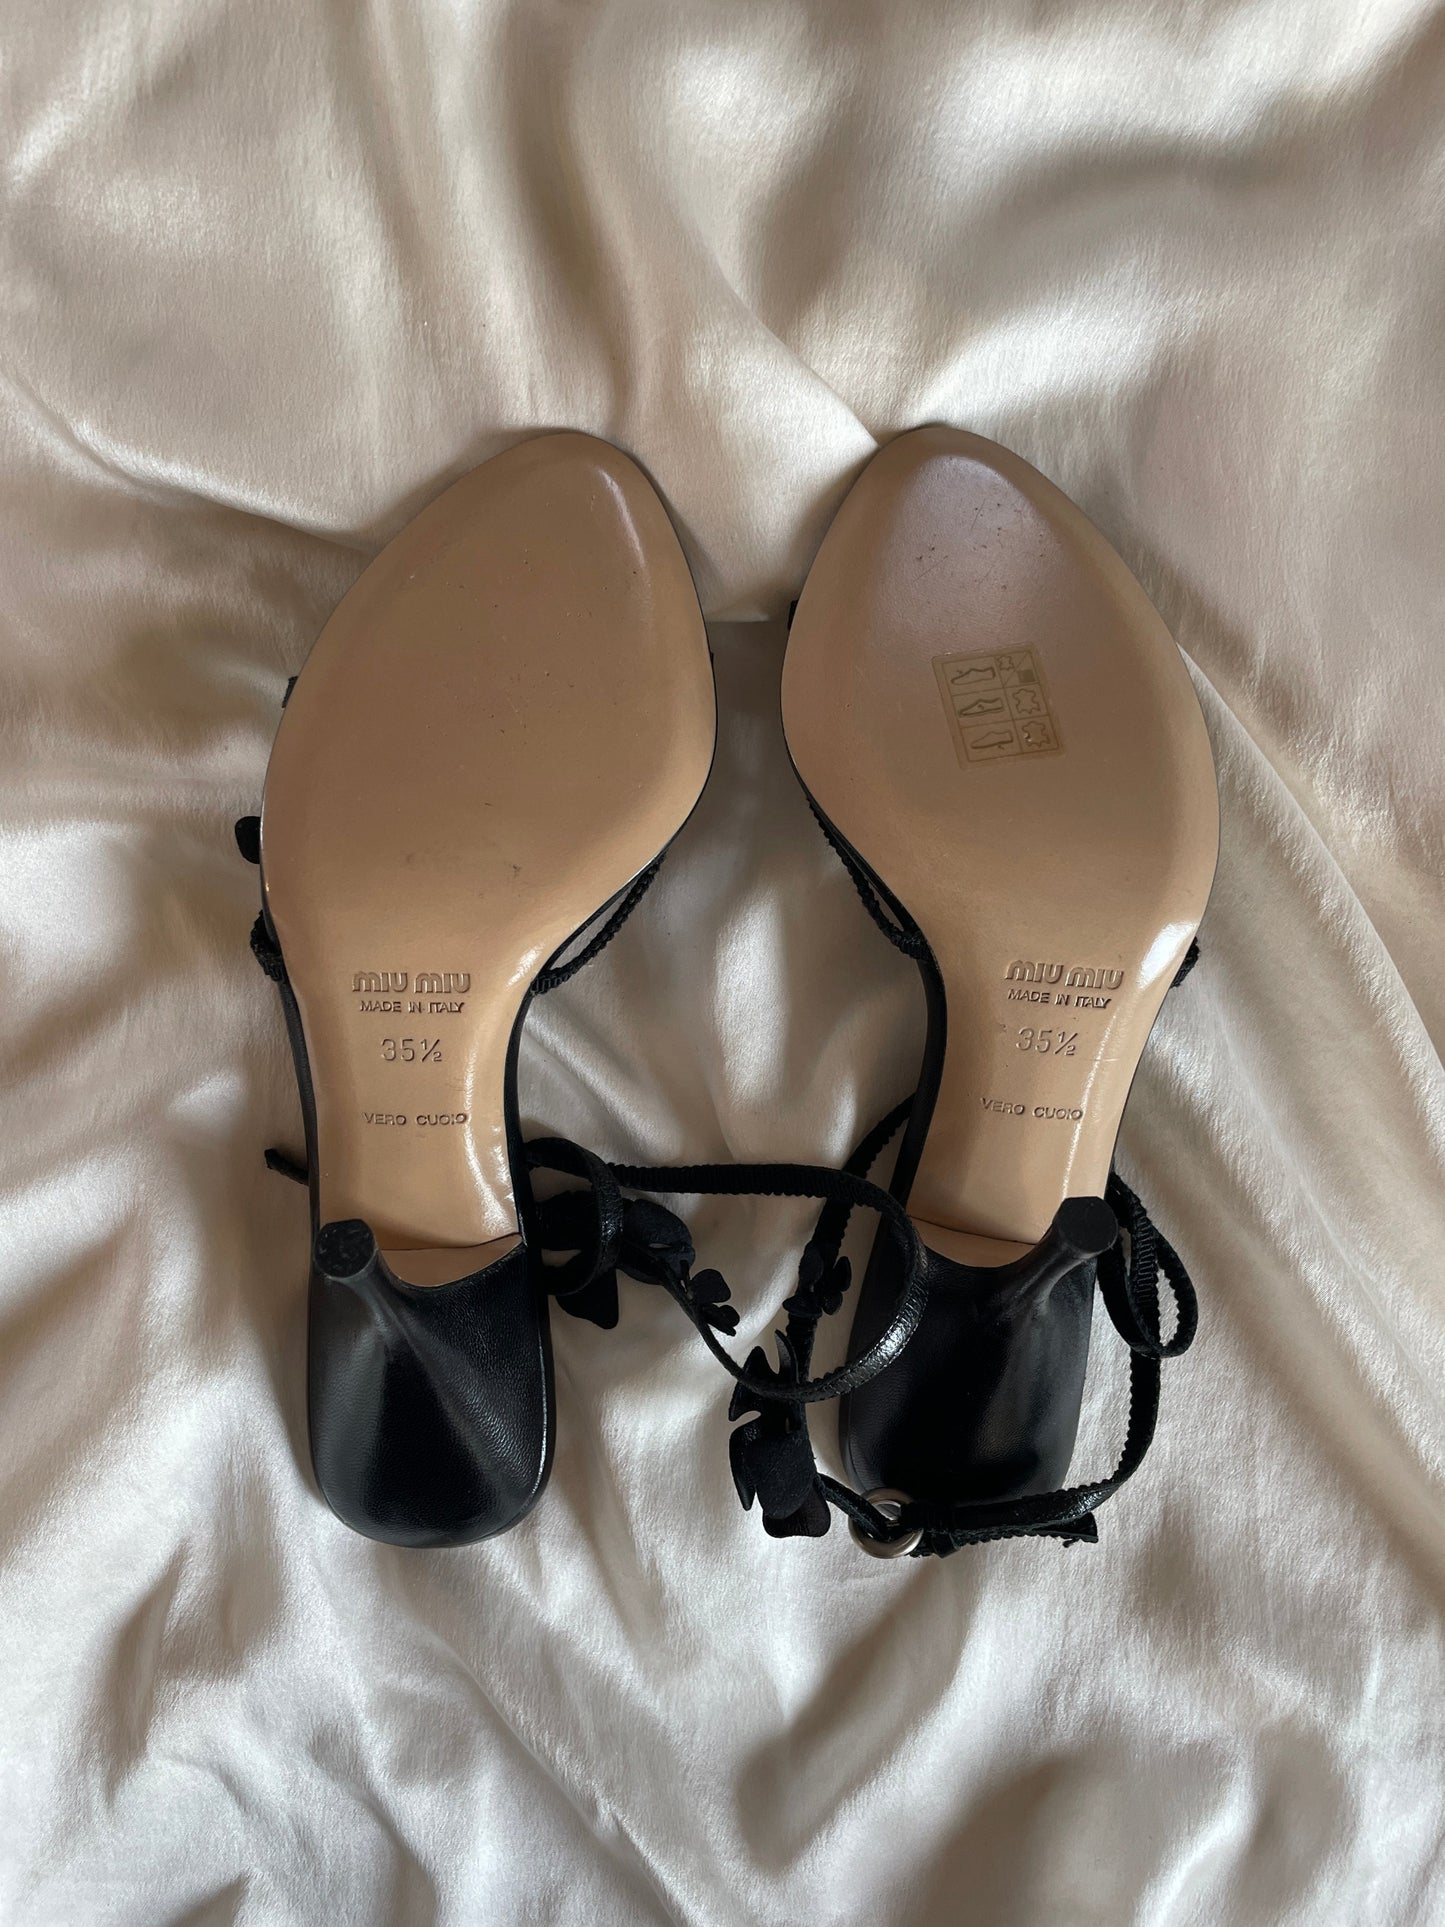 Miu Miu black floral heels UNWORN (EU 35,5 / US 5,5)